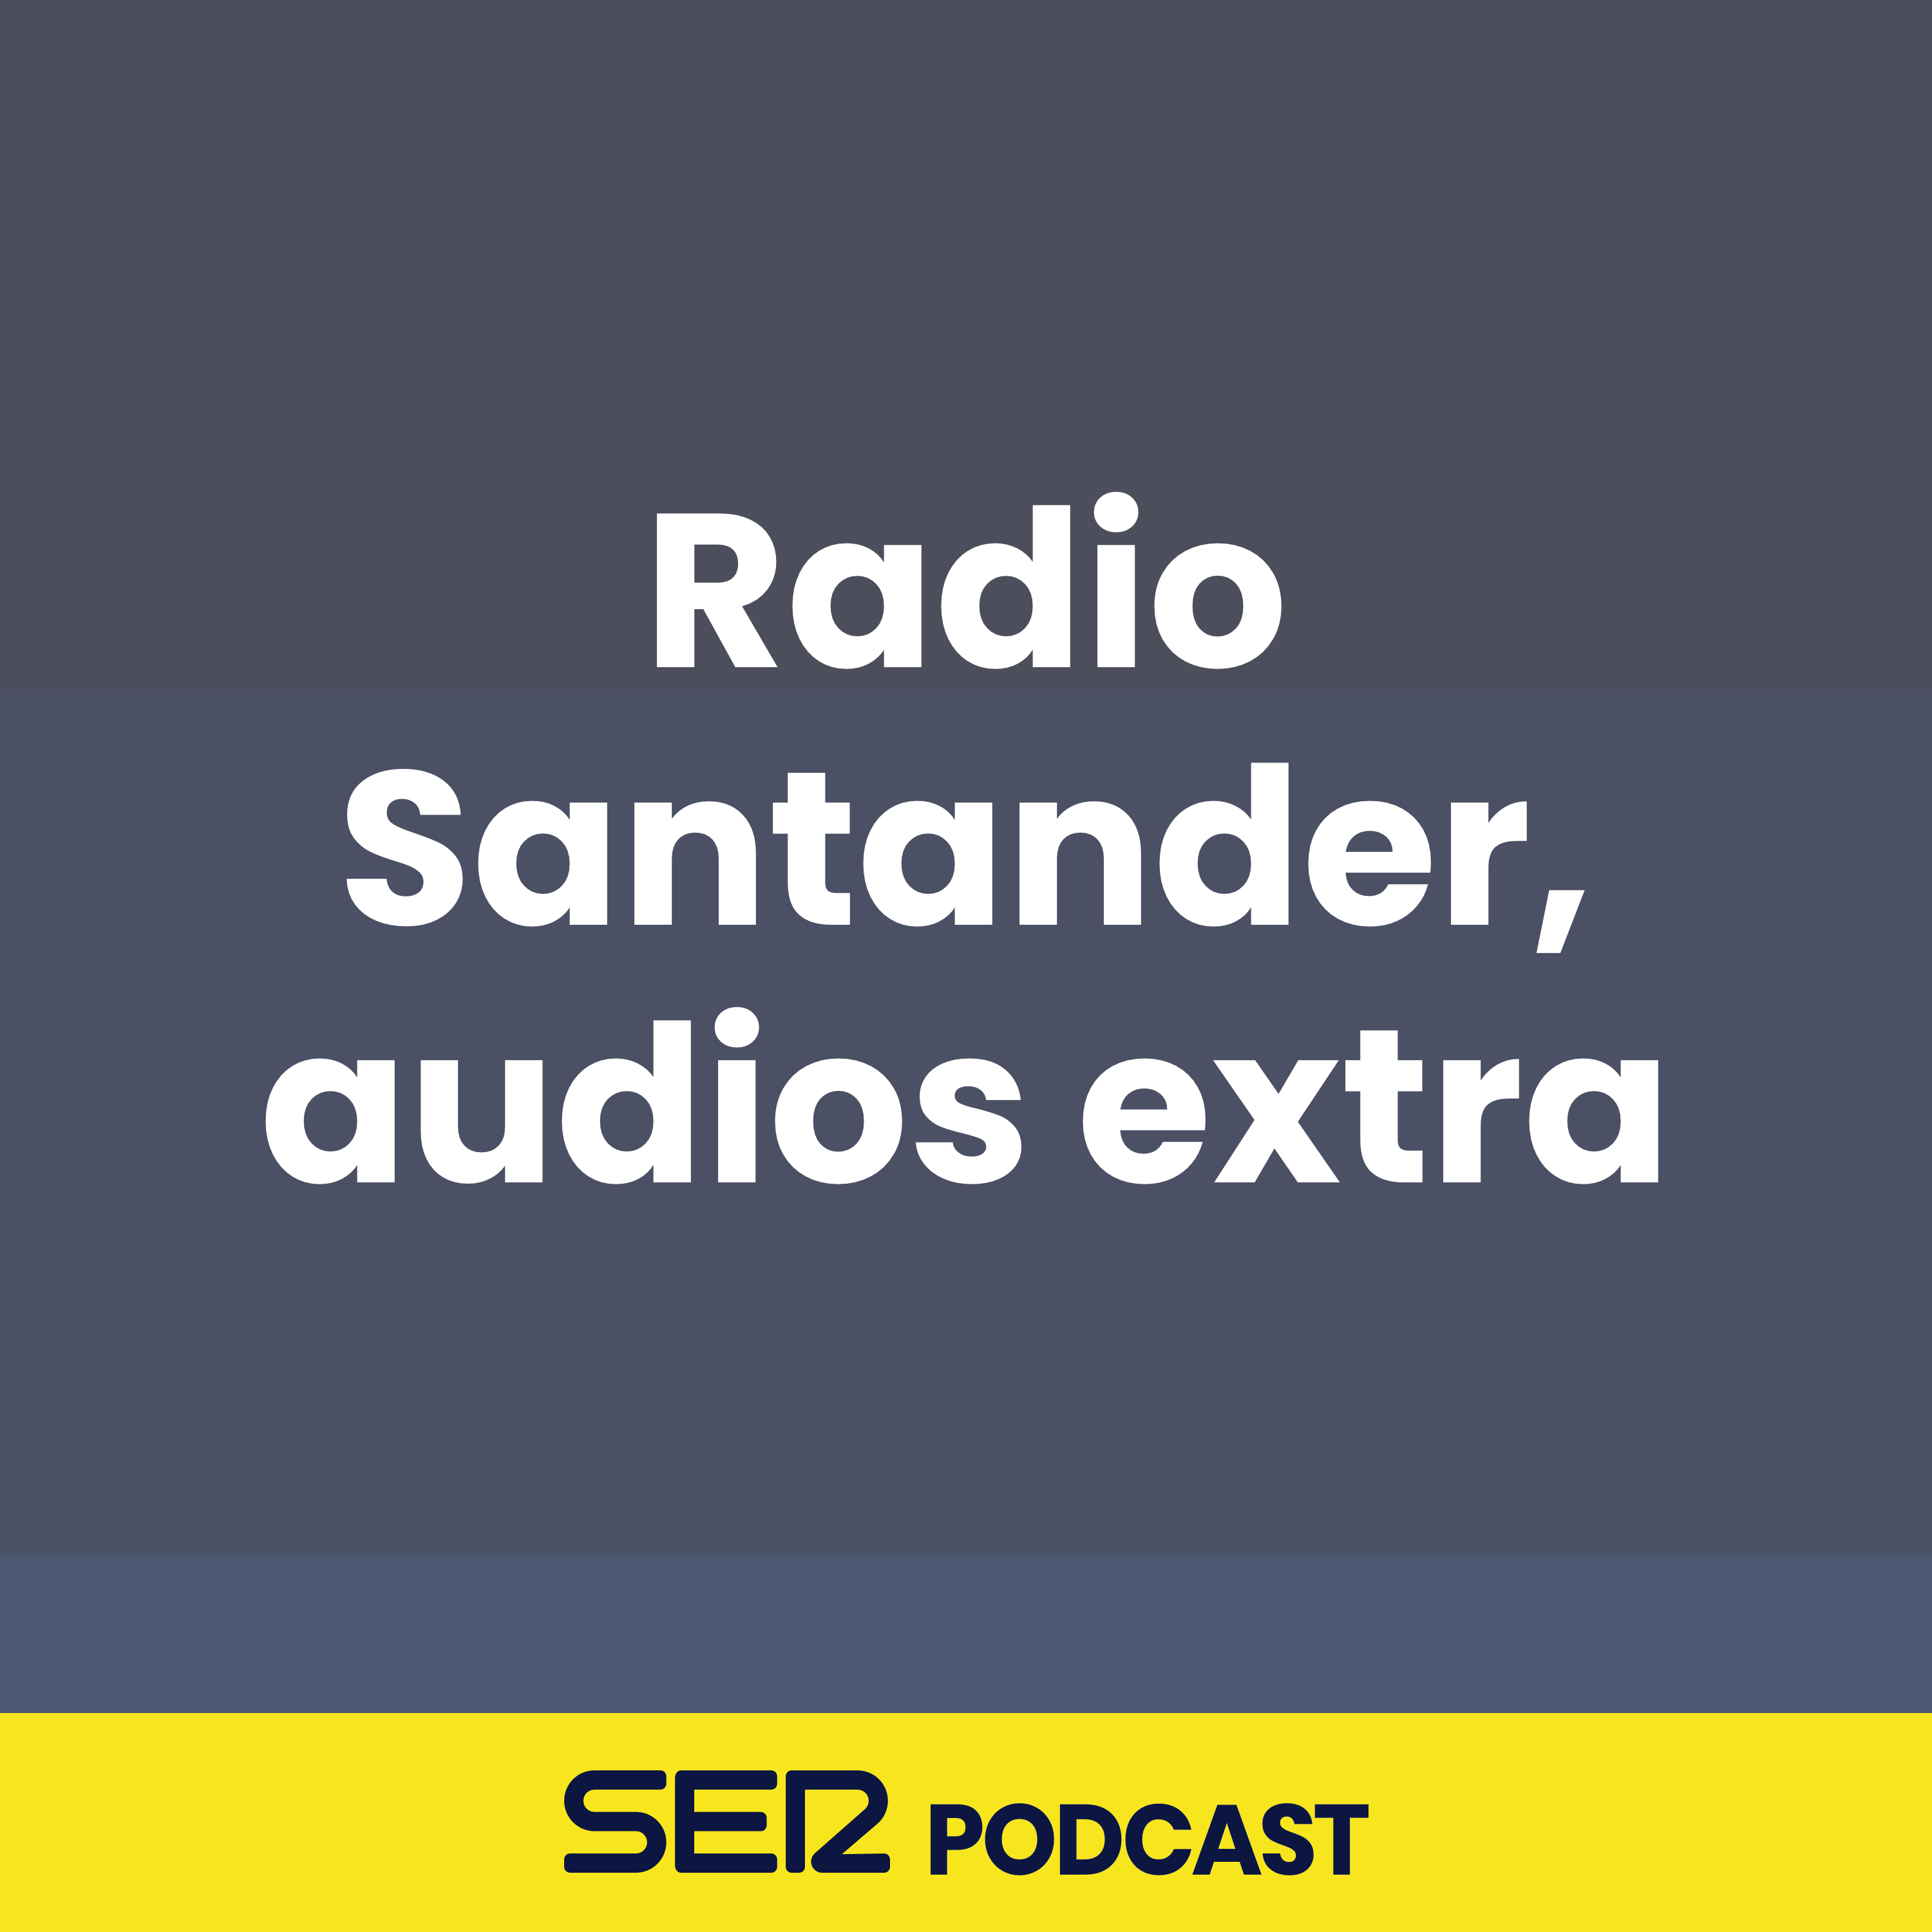 Radio Santander, audios extra